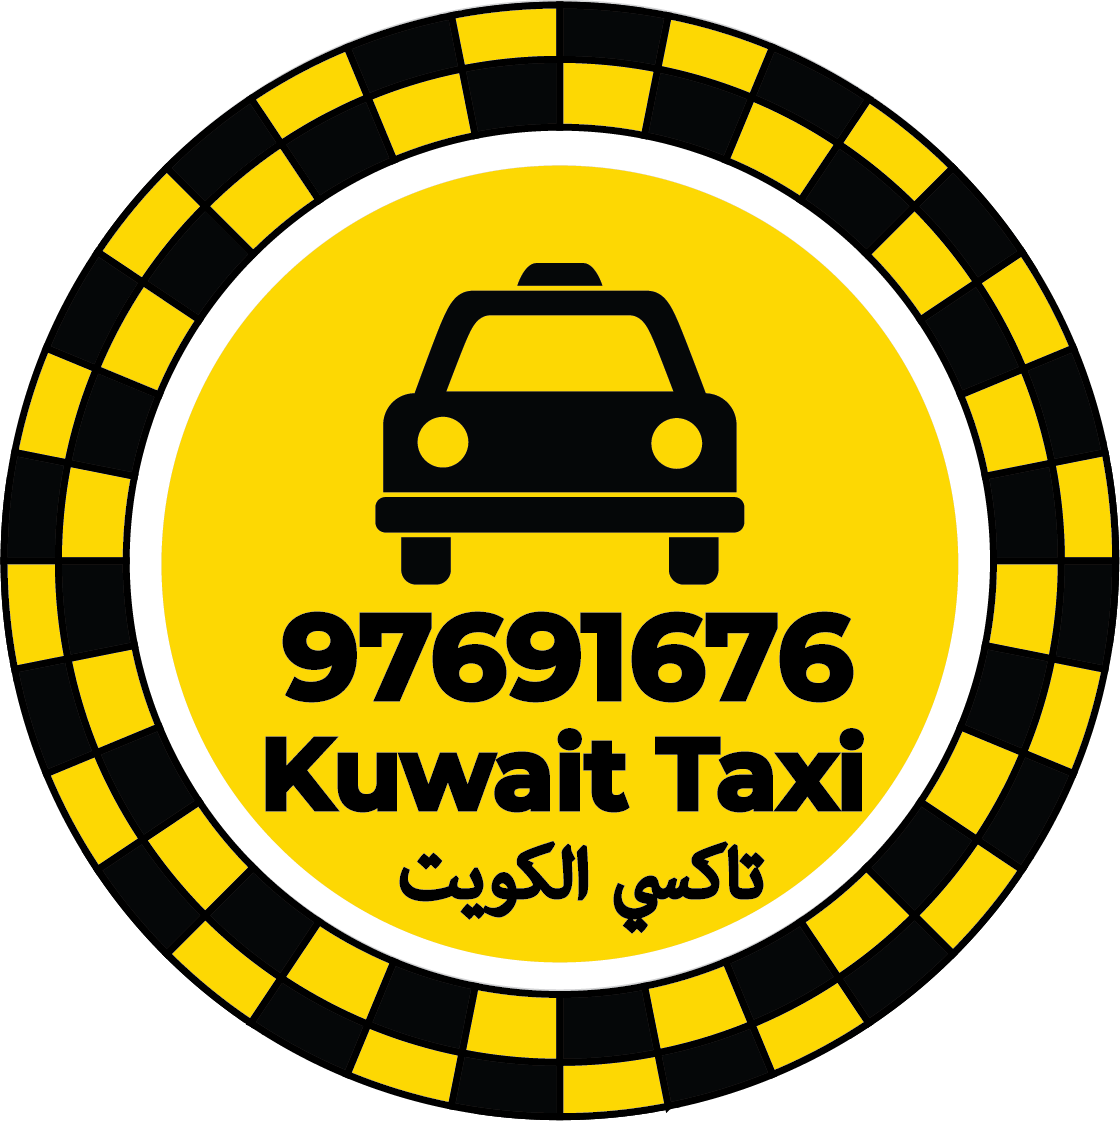 رقم تاكسي الوفرة - تاكسي في الوفرة و الوفرة الجديدة